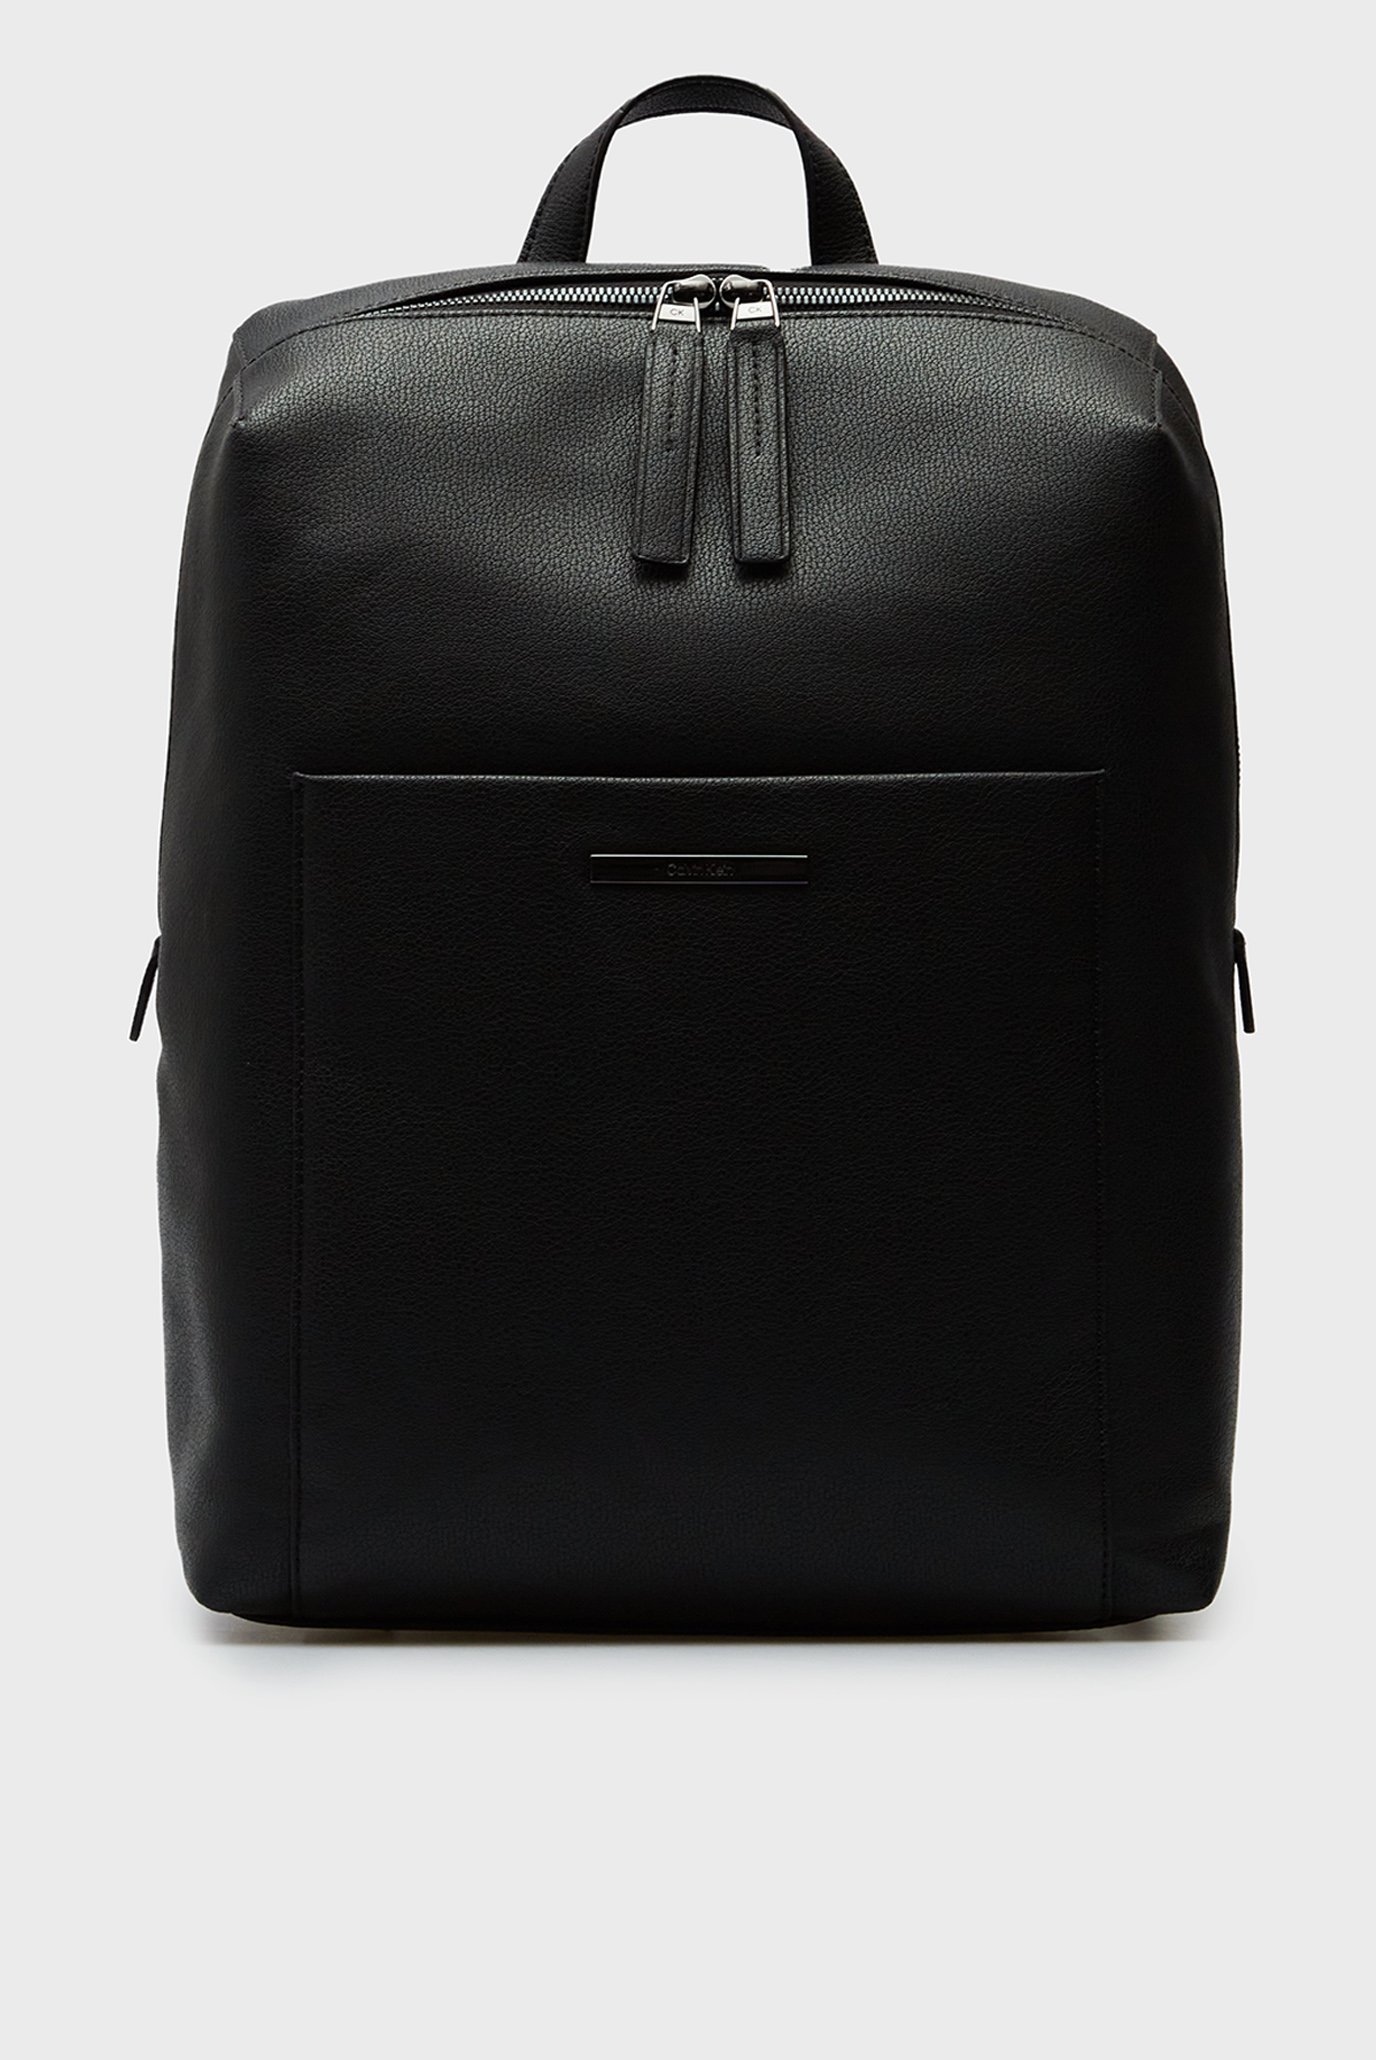 Чоловічий чорний рюкзак MODERN BAR SQUARED BP 1